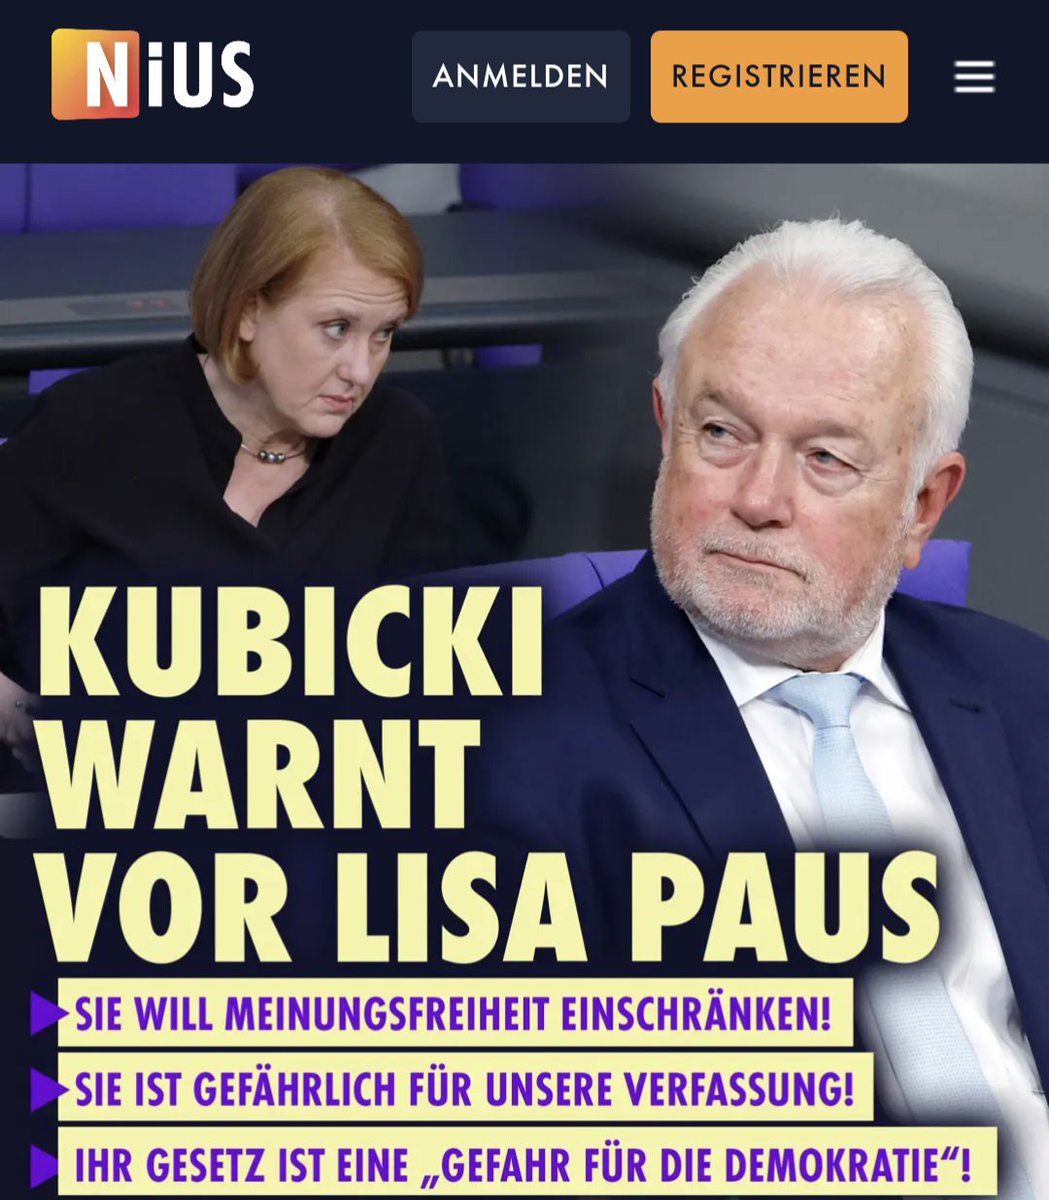 BREAKING NIUS: Wolfgang Kubicki warnt vor den totalitären Umtrieben der Grünen Ministerin Lisa Paus, ihr Demokratiefördergesetz sei 'eine Gefahr für die Demokratie', sie wolle das Grundrecht der Meinungsfreiheit einschränken.

Hier das ganze Zitat: 'Als Jurist bin ich sehr…